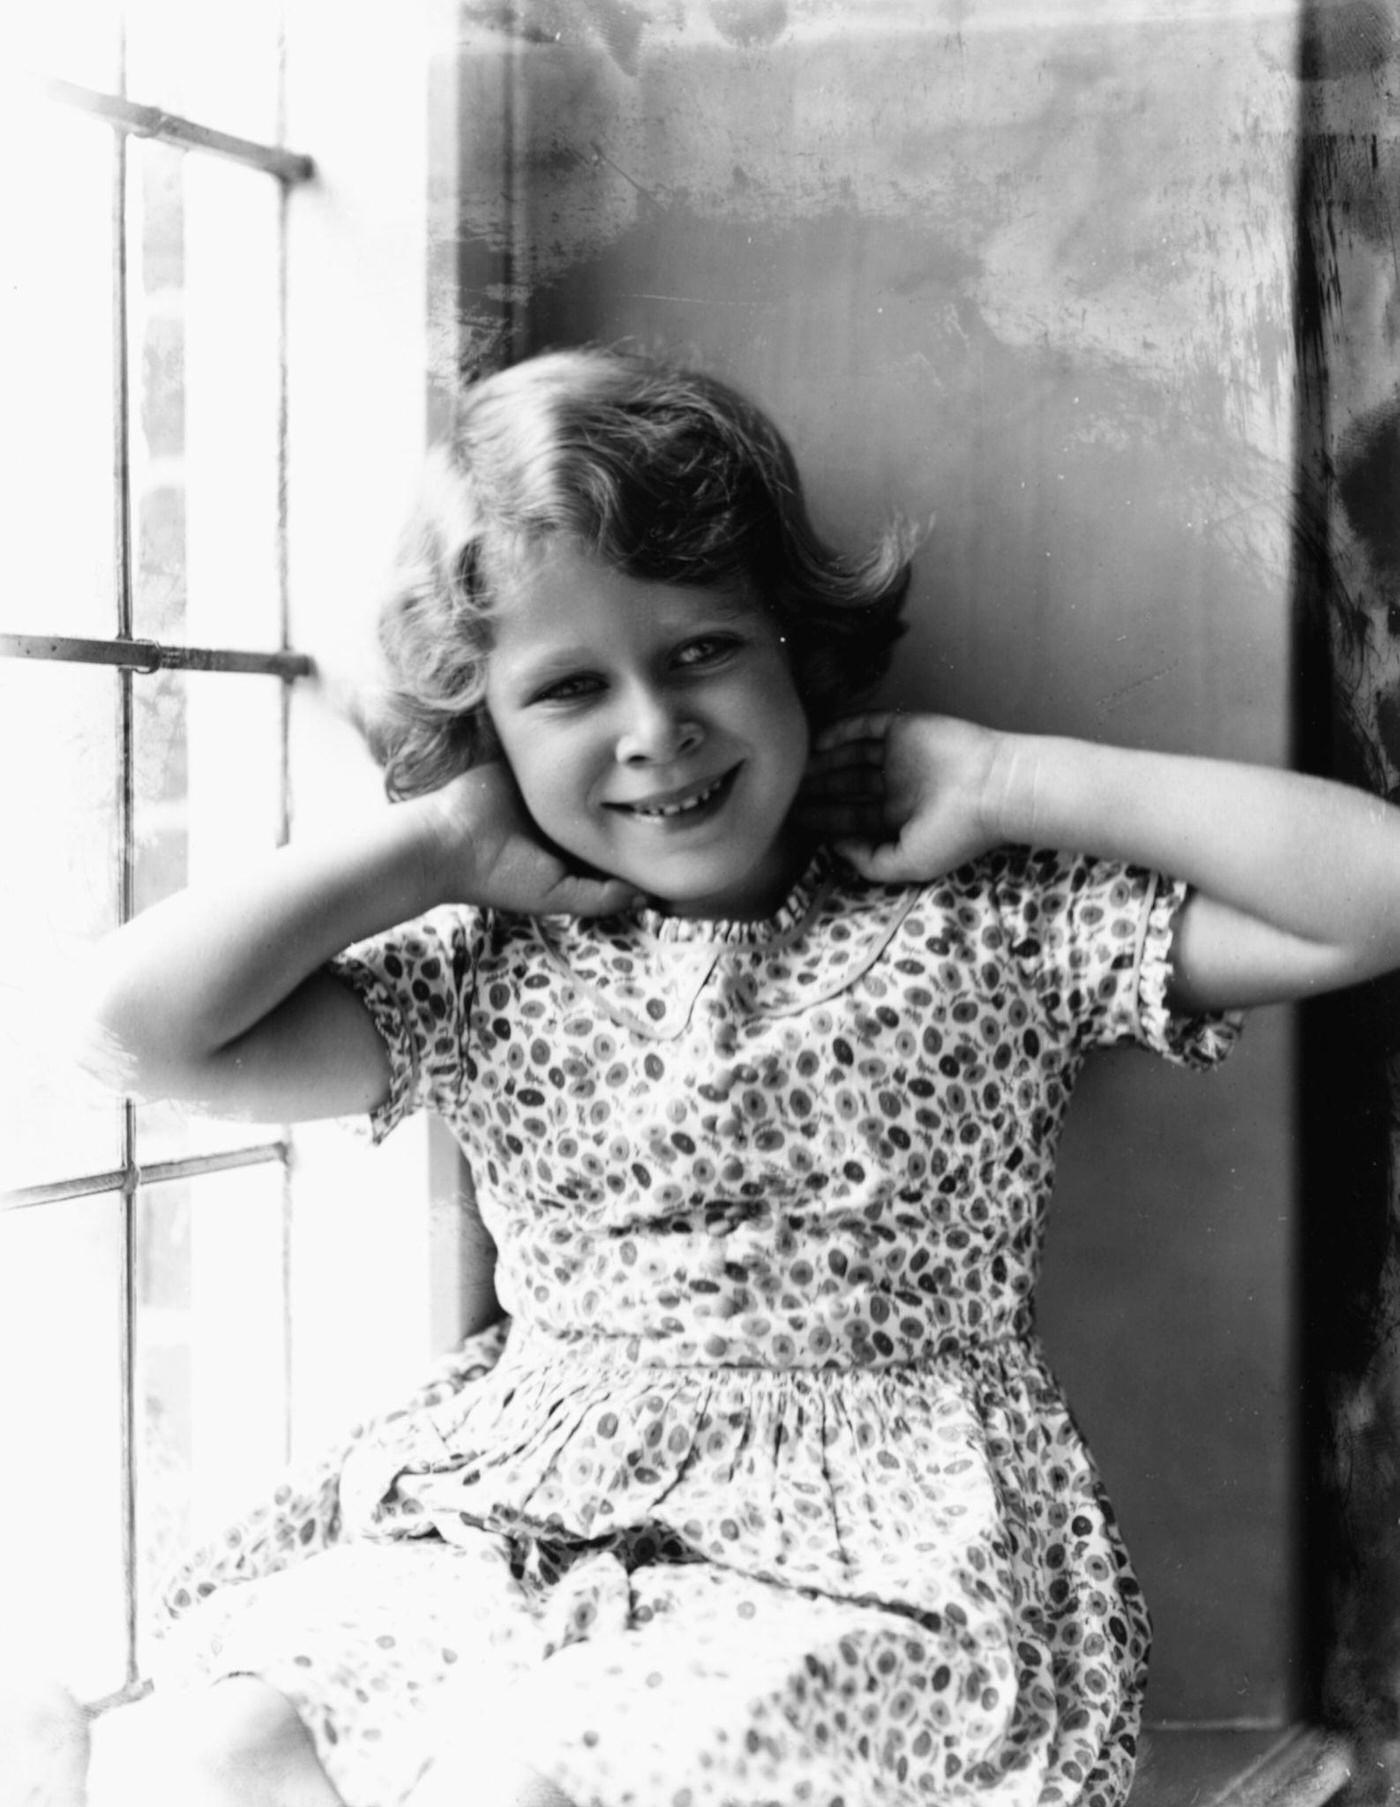 Childhood portrait of Queen Elizabeth II sitting in a window, August 12th 1932.